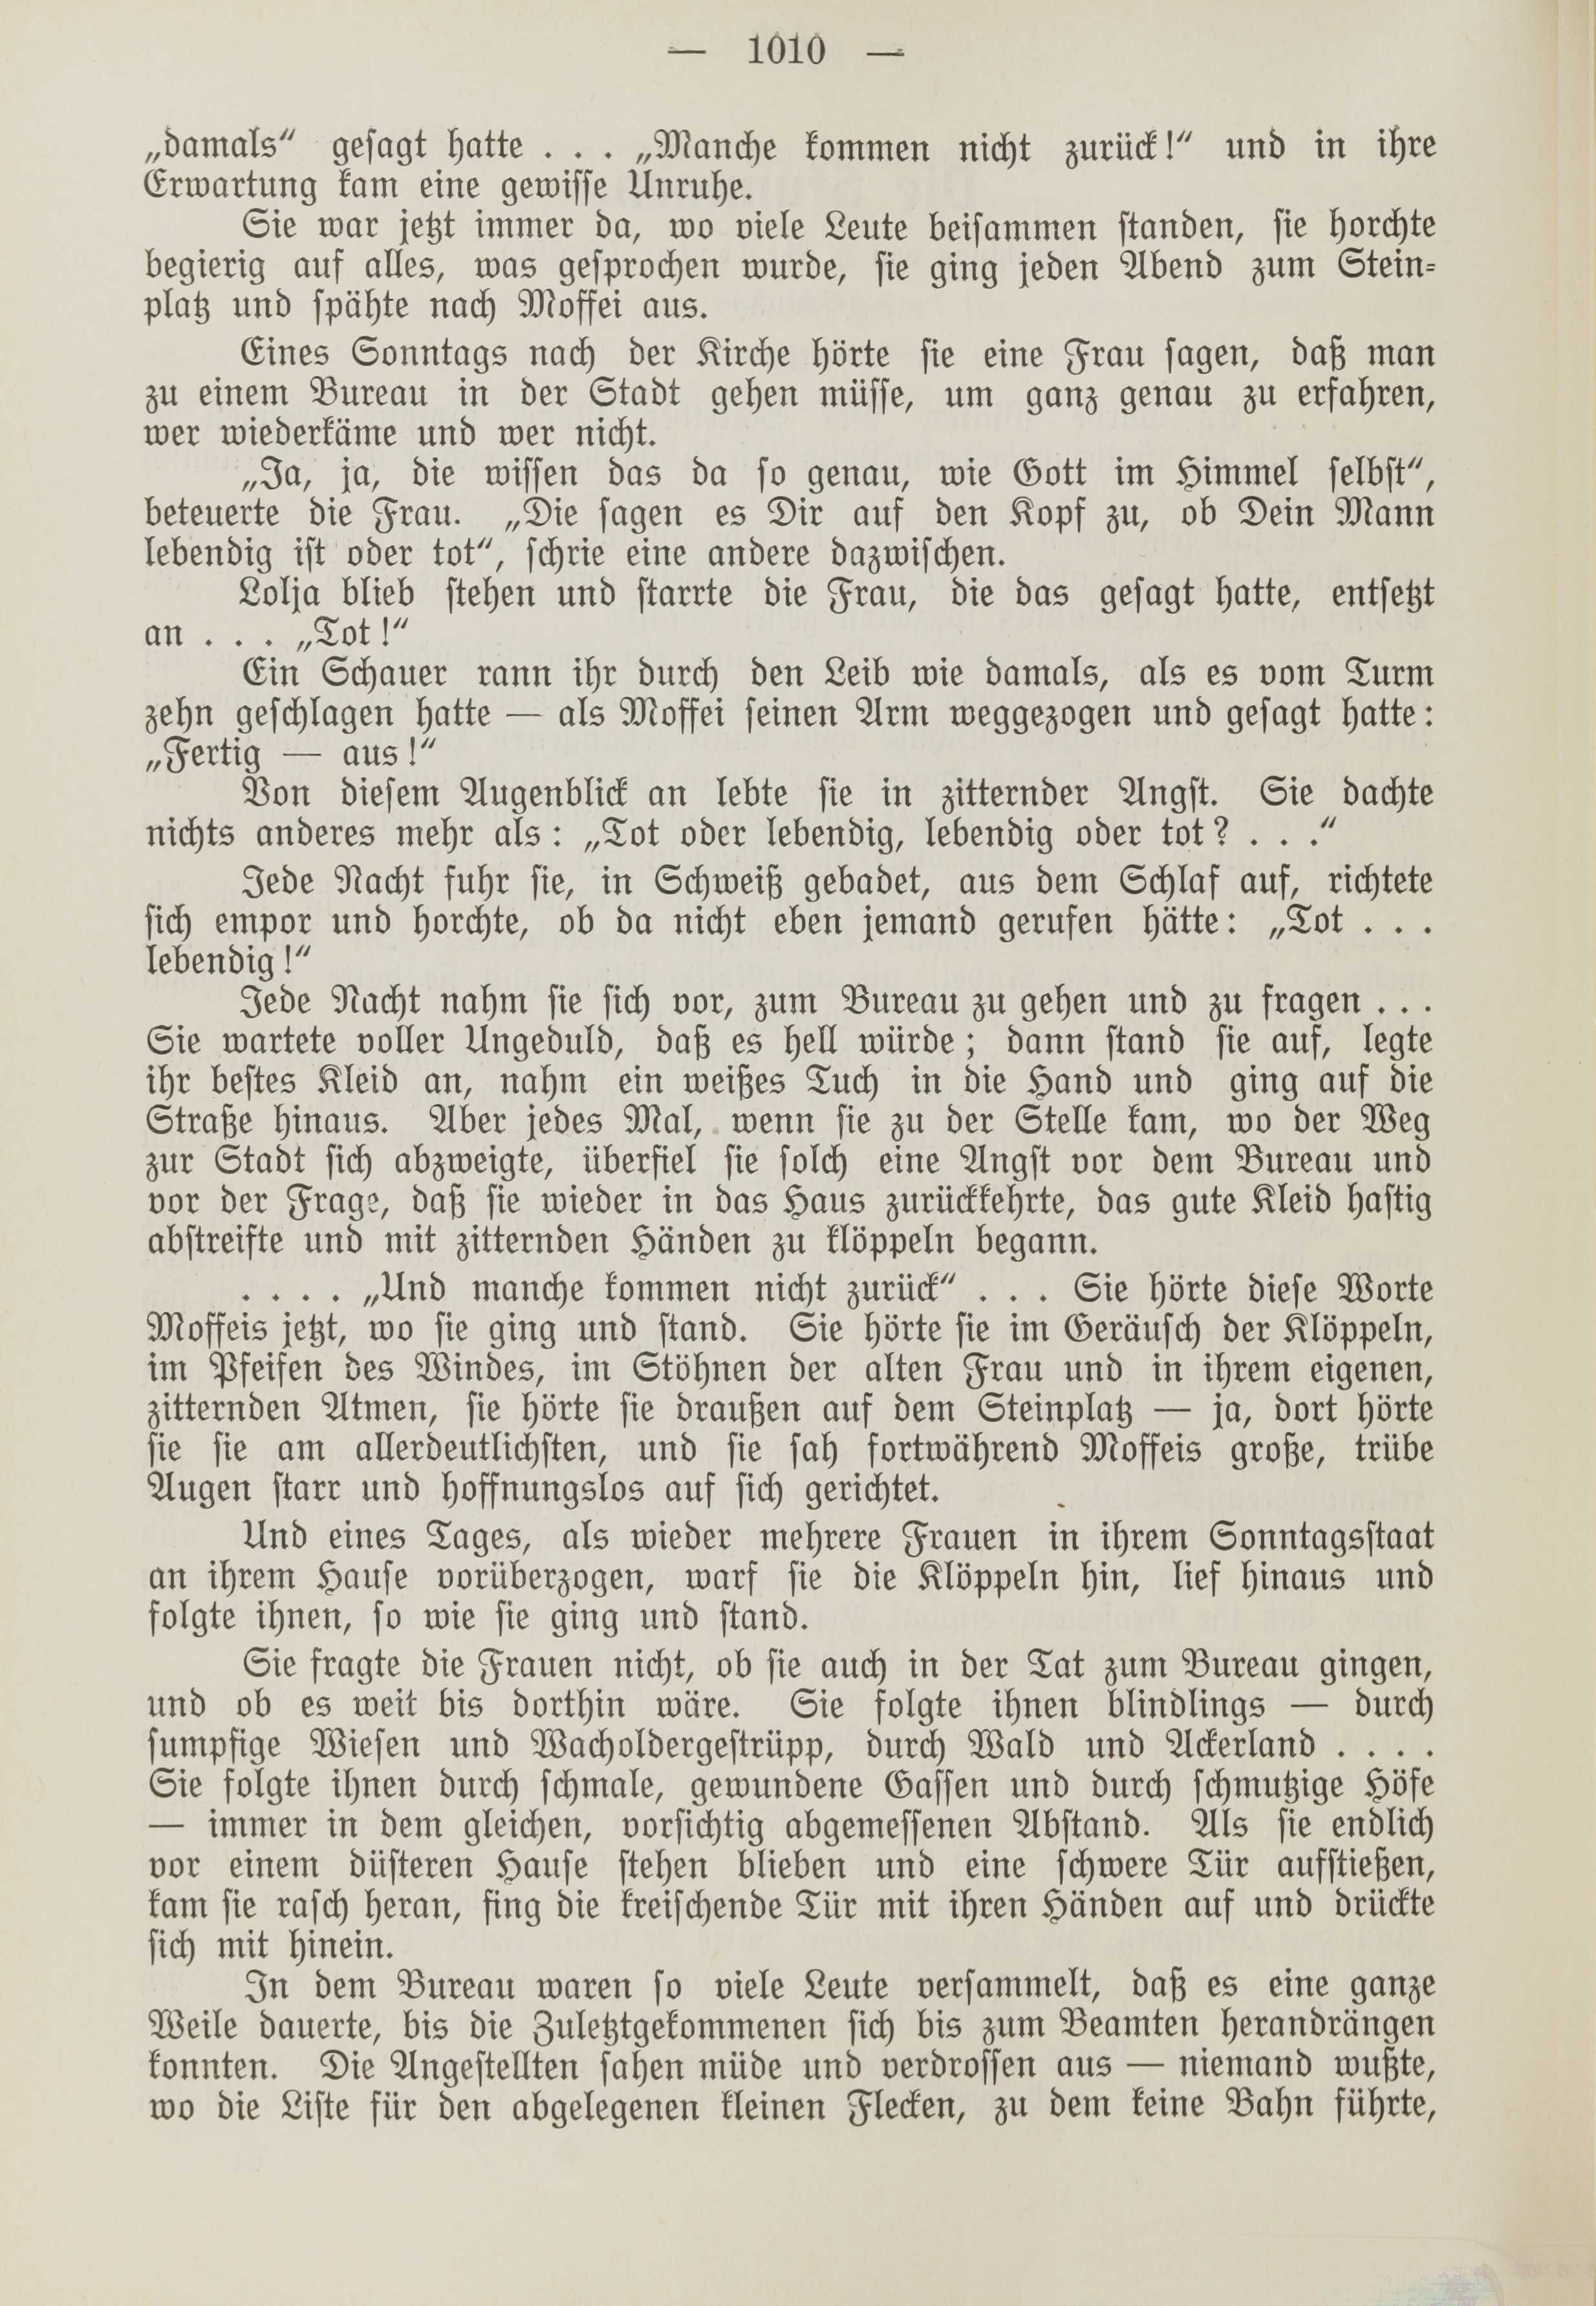 Deutsche Monatsschrift für Russland [1] (1912) | 1018. (1010) Main body of text